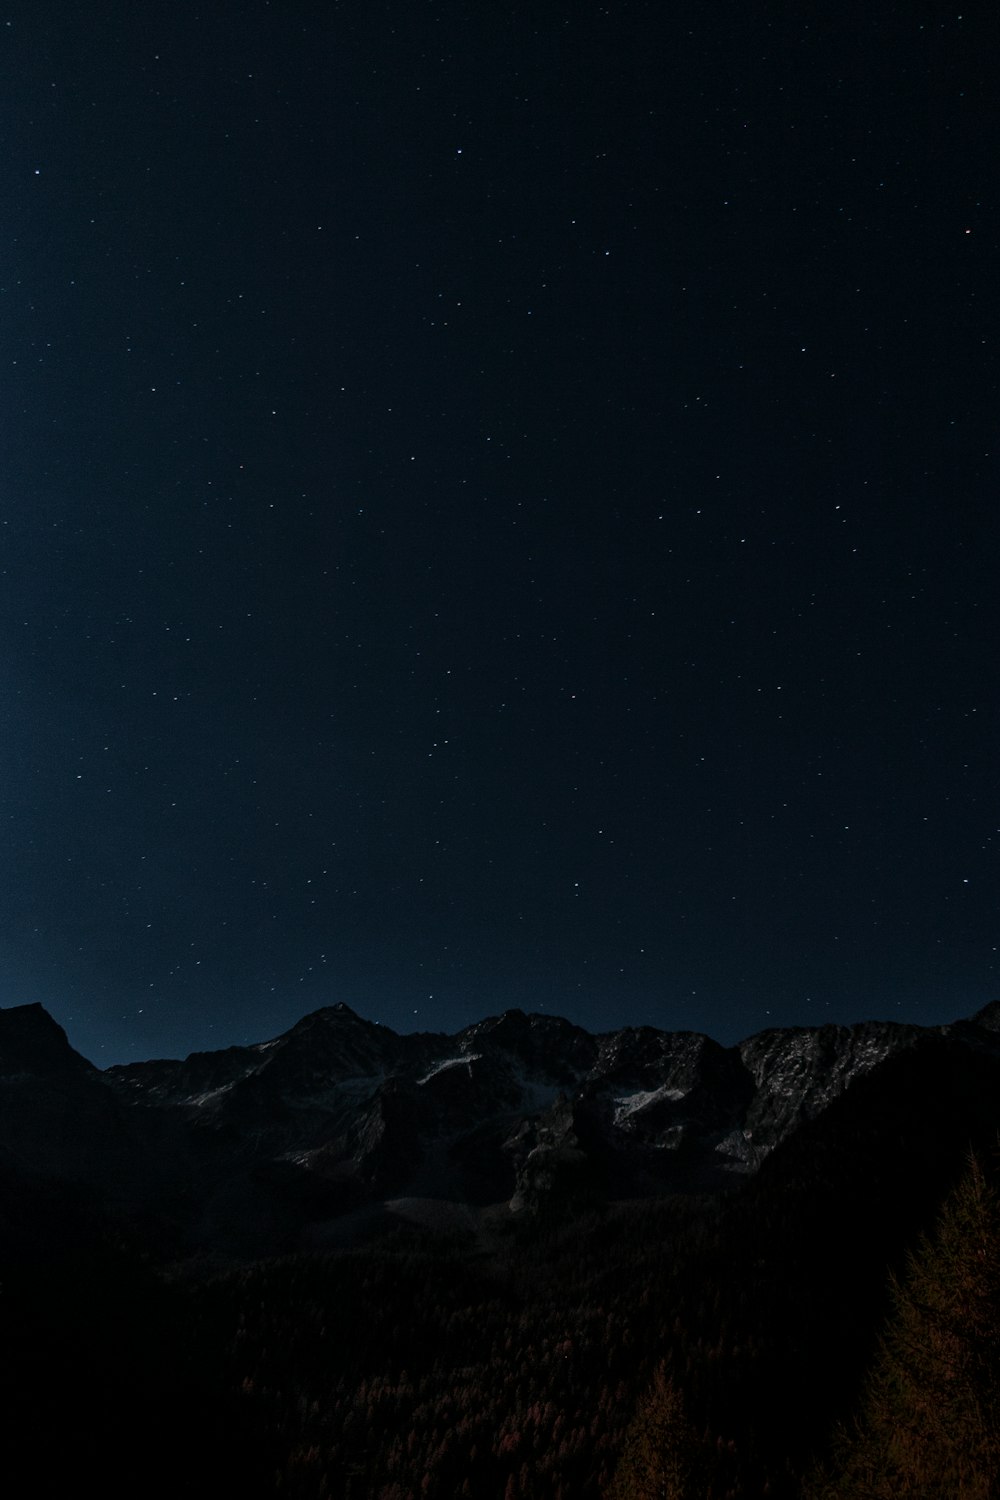 montañas grises y marrones bajo la foto de la noche estrellada